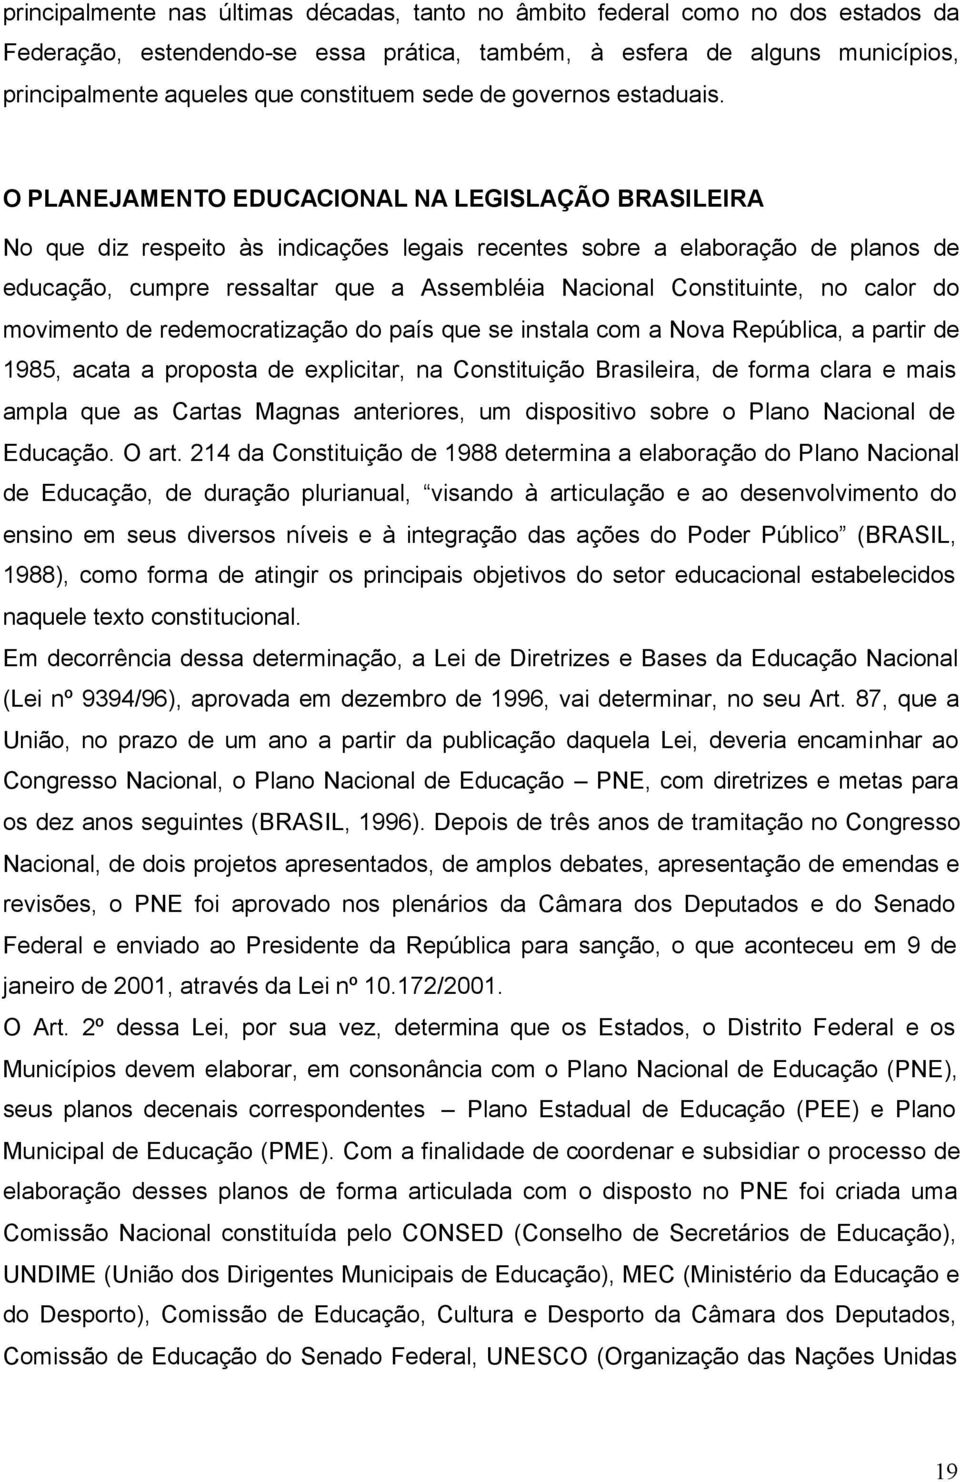 O PLANEJAMENTO EDUCACIONAL NA LEGISLAÇÃO BRASILEIRA No que diz respeito às indicações legais recentes sobre a elaboração de planos de educação, cumpre ressaltar que a Assembléia Nacional